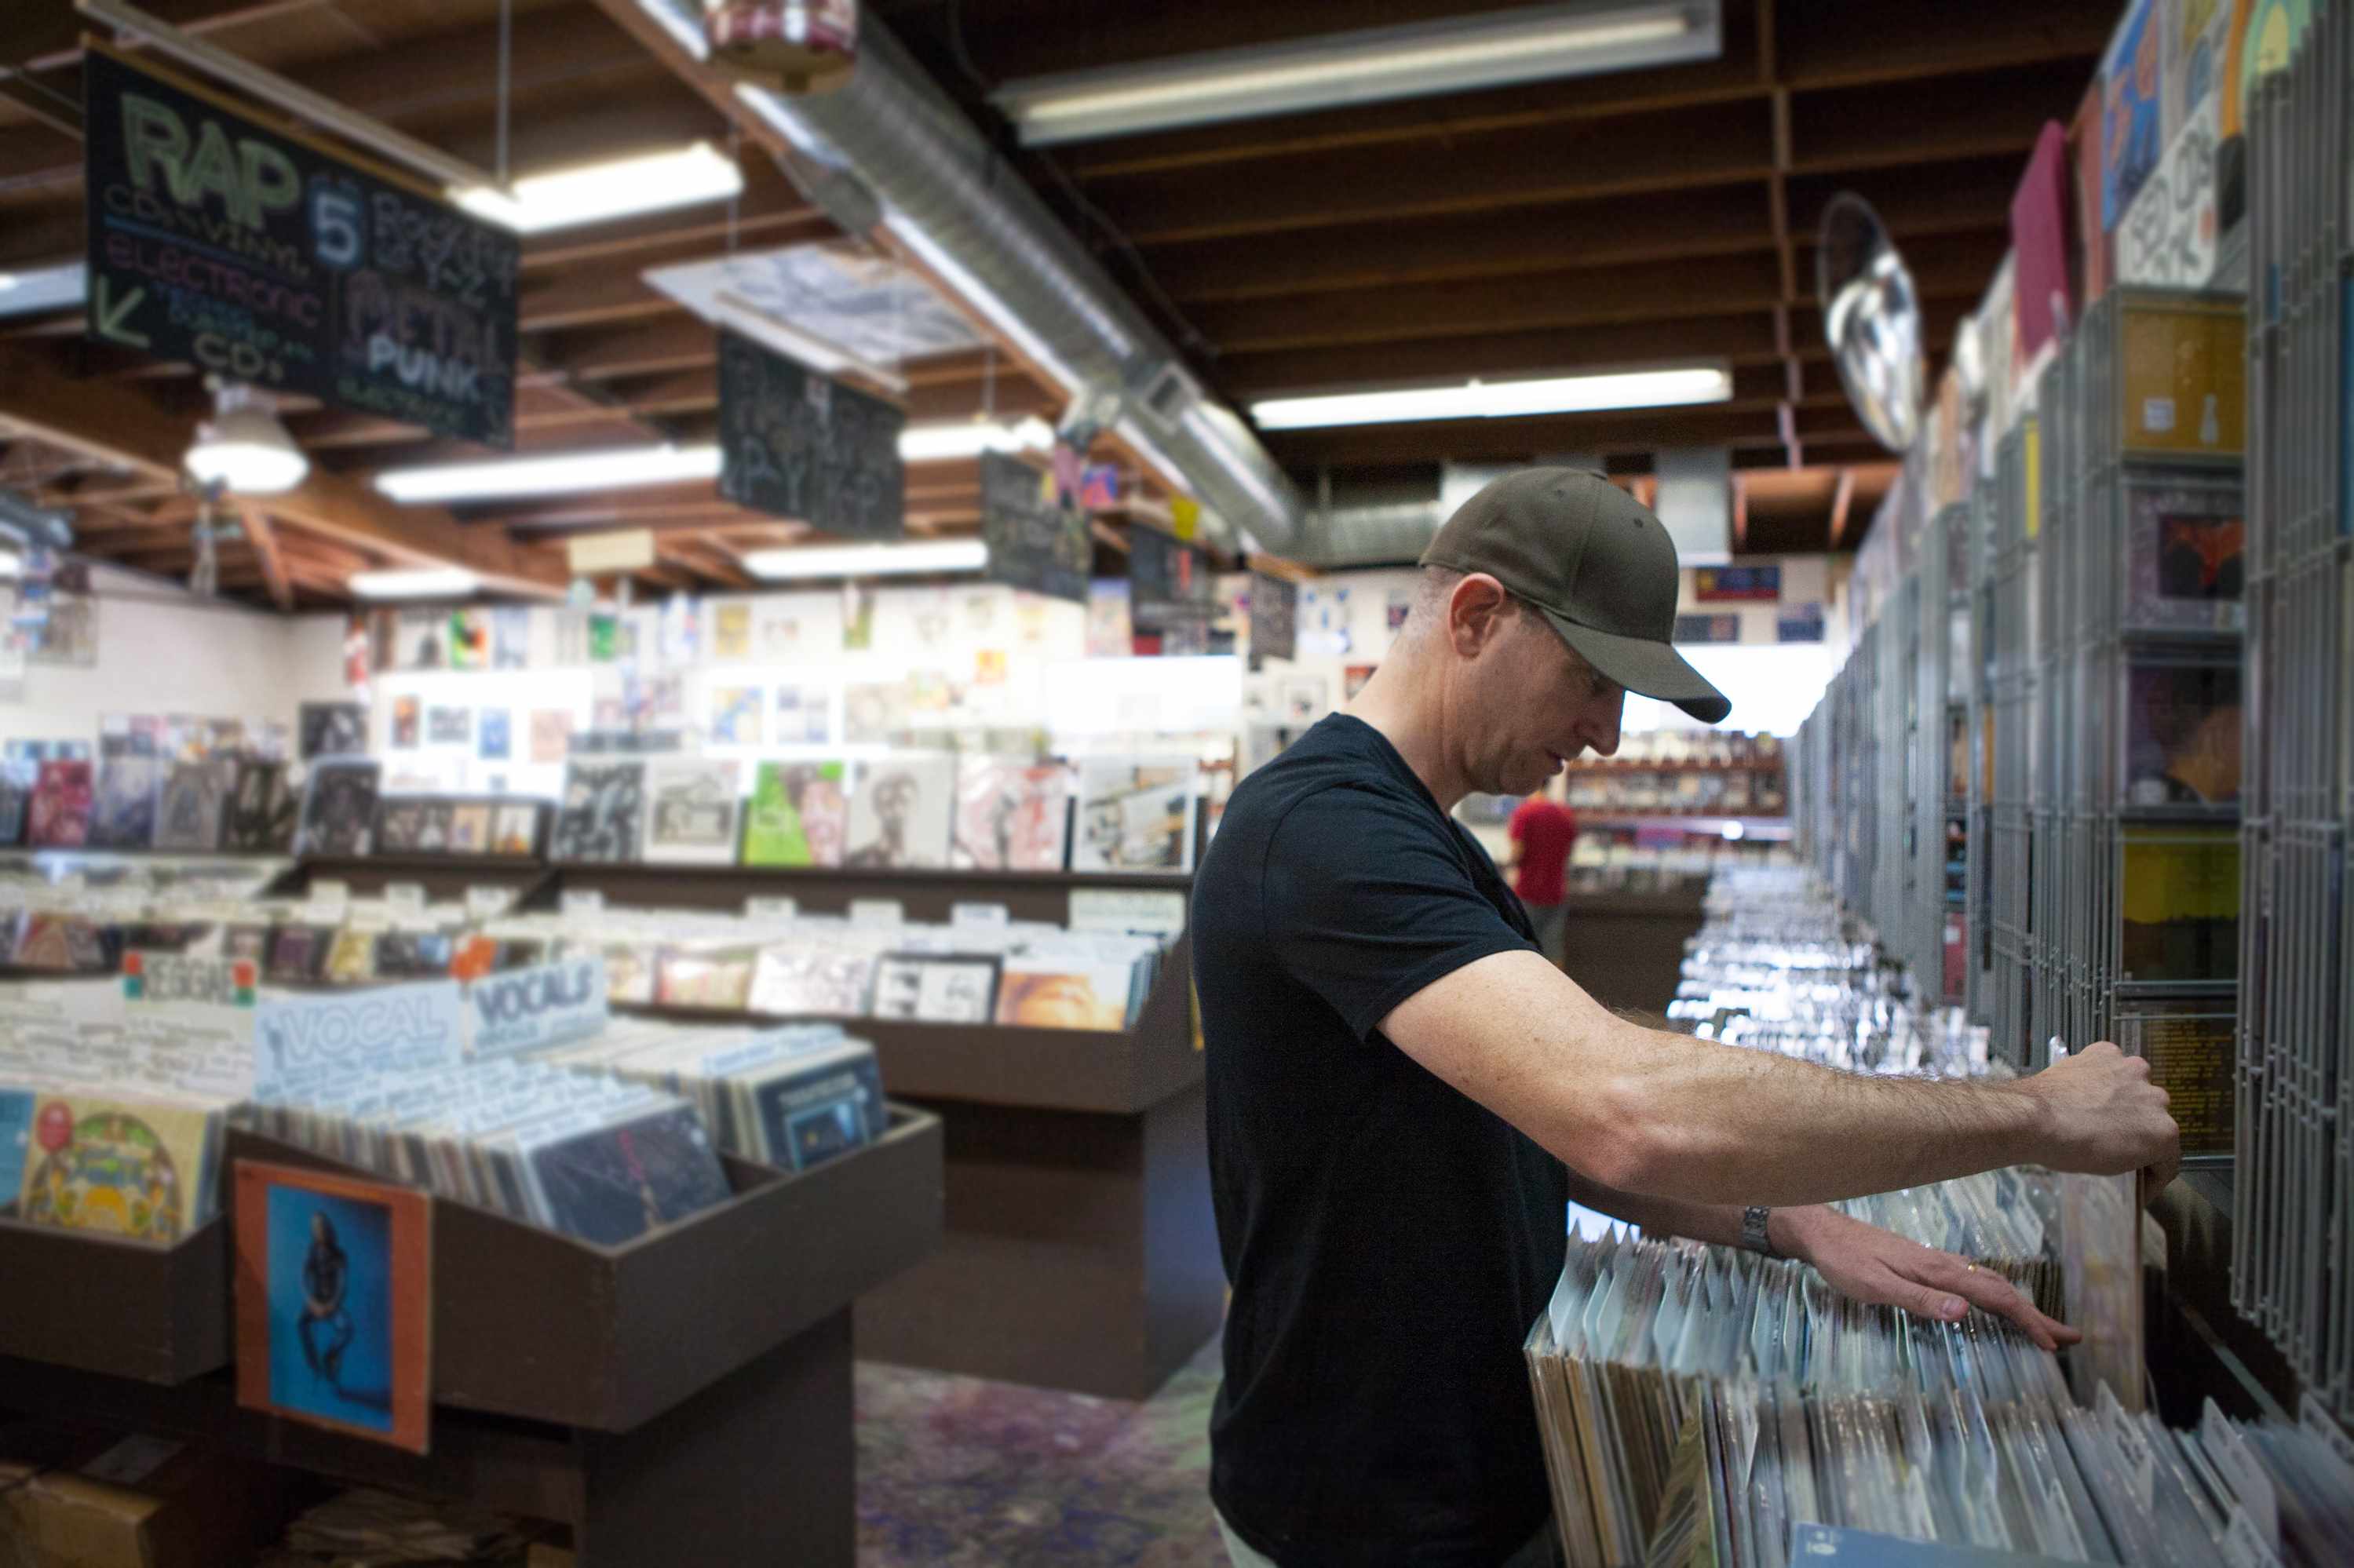 Für Vinyl-Käufer ist der Plattenladen ein Ort der Ruhe und Befreiung